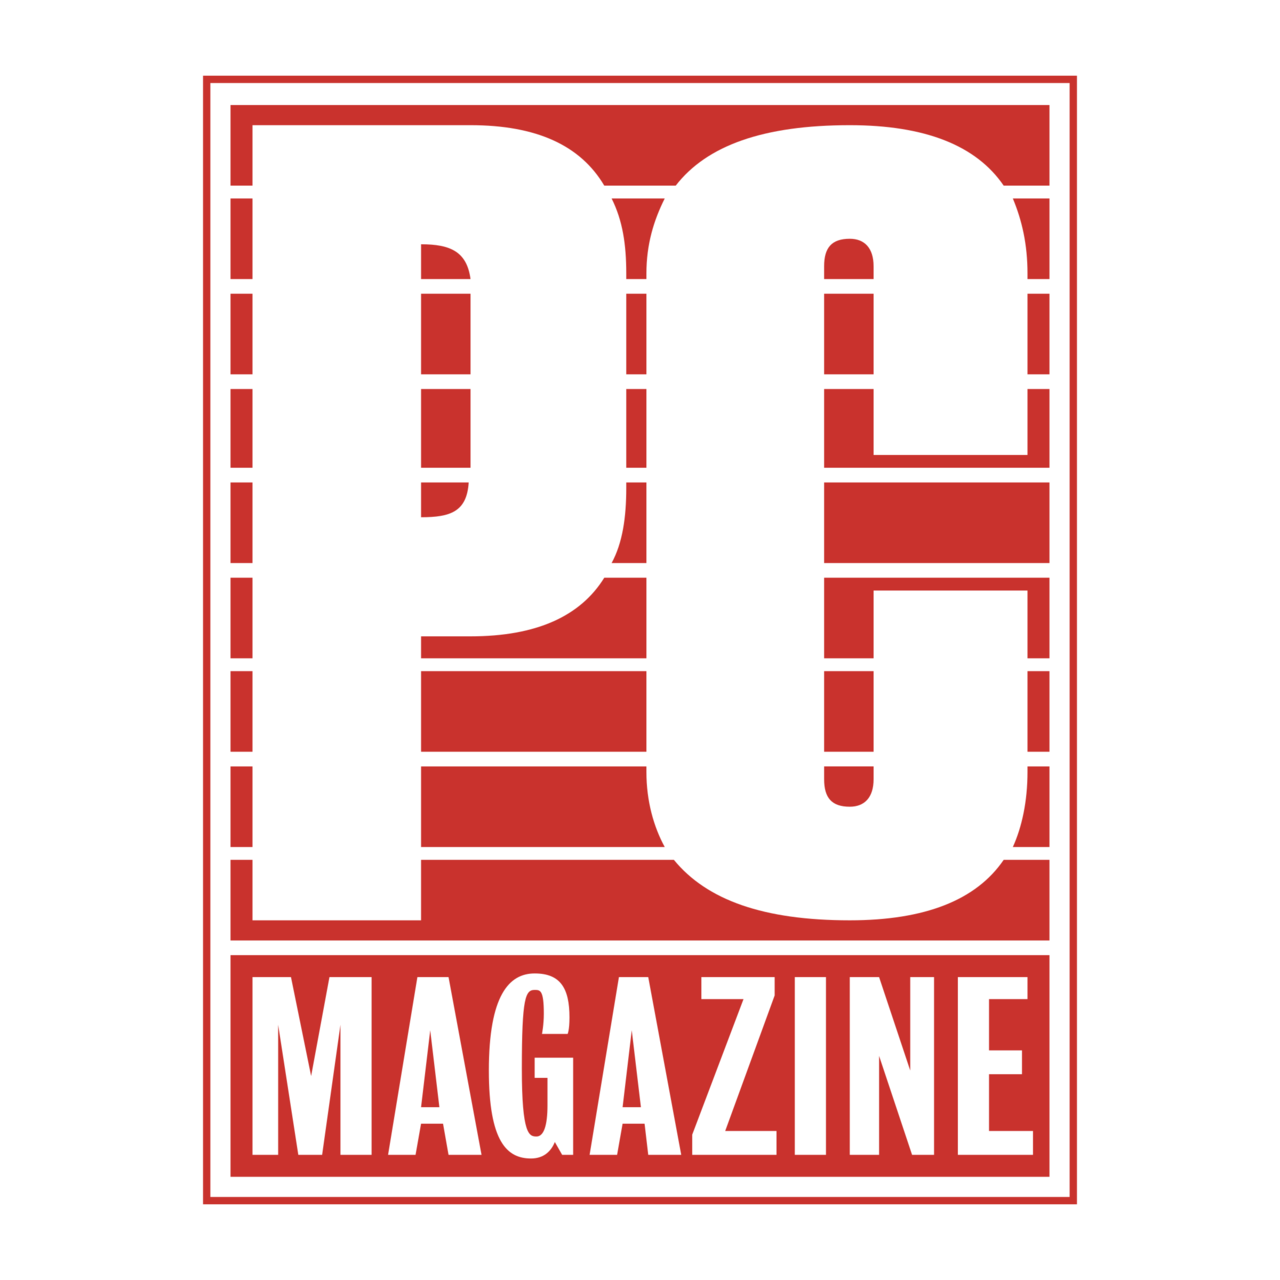 Magazine Background PNG Image